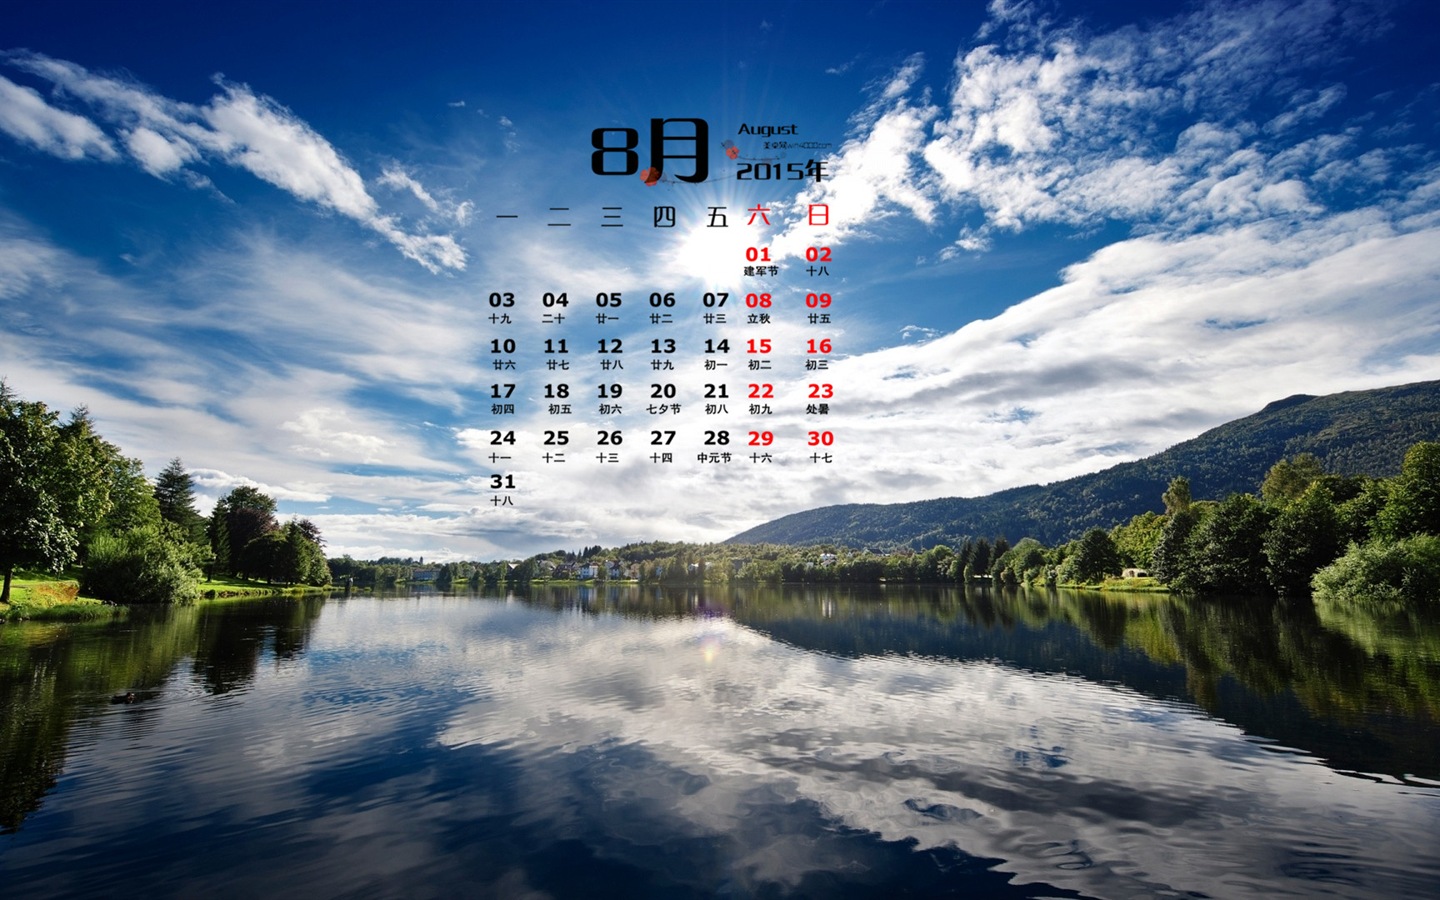 August 2015 calendar wallpaper (1) #10 - 1440x900